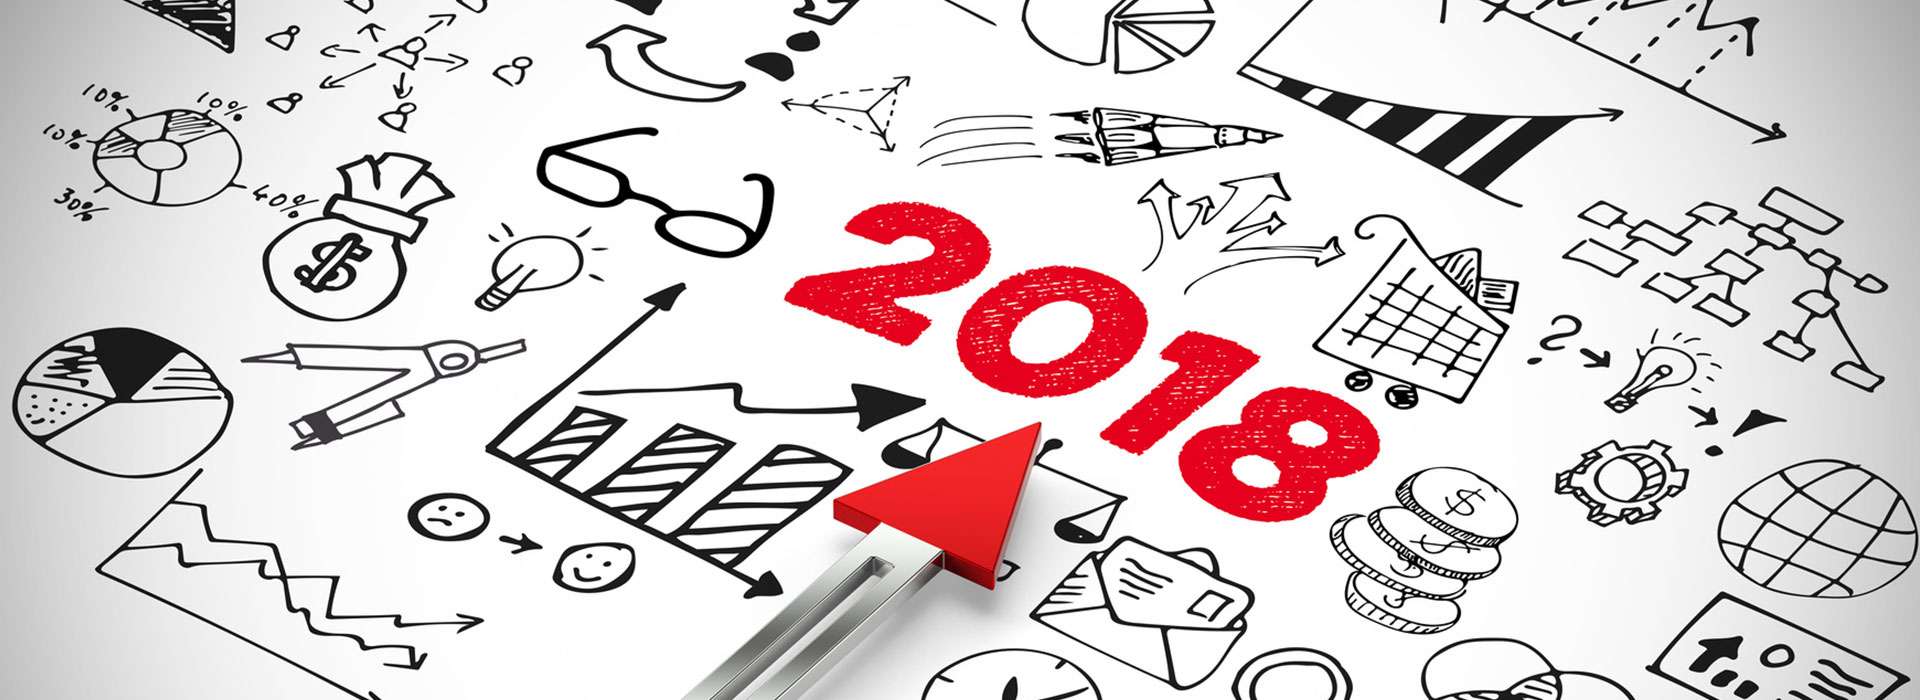 Czy Twoja strona jest gotowa na 2018 rok?